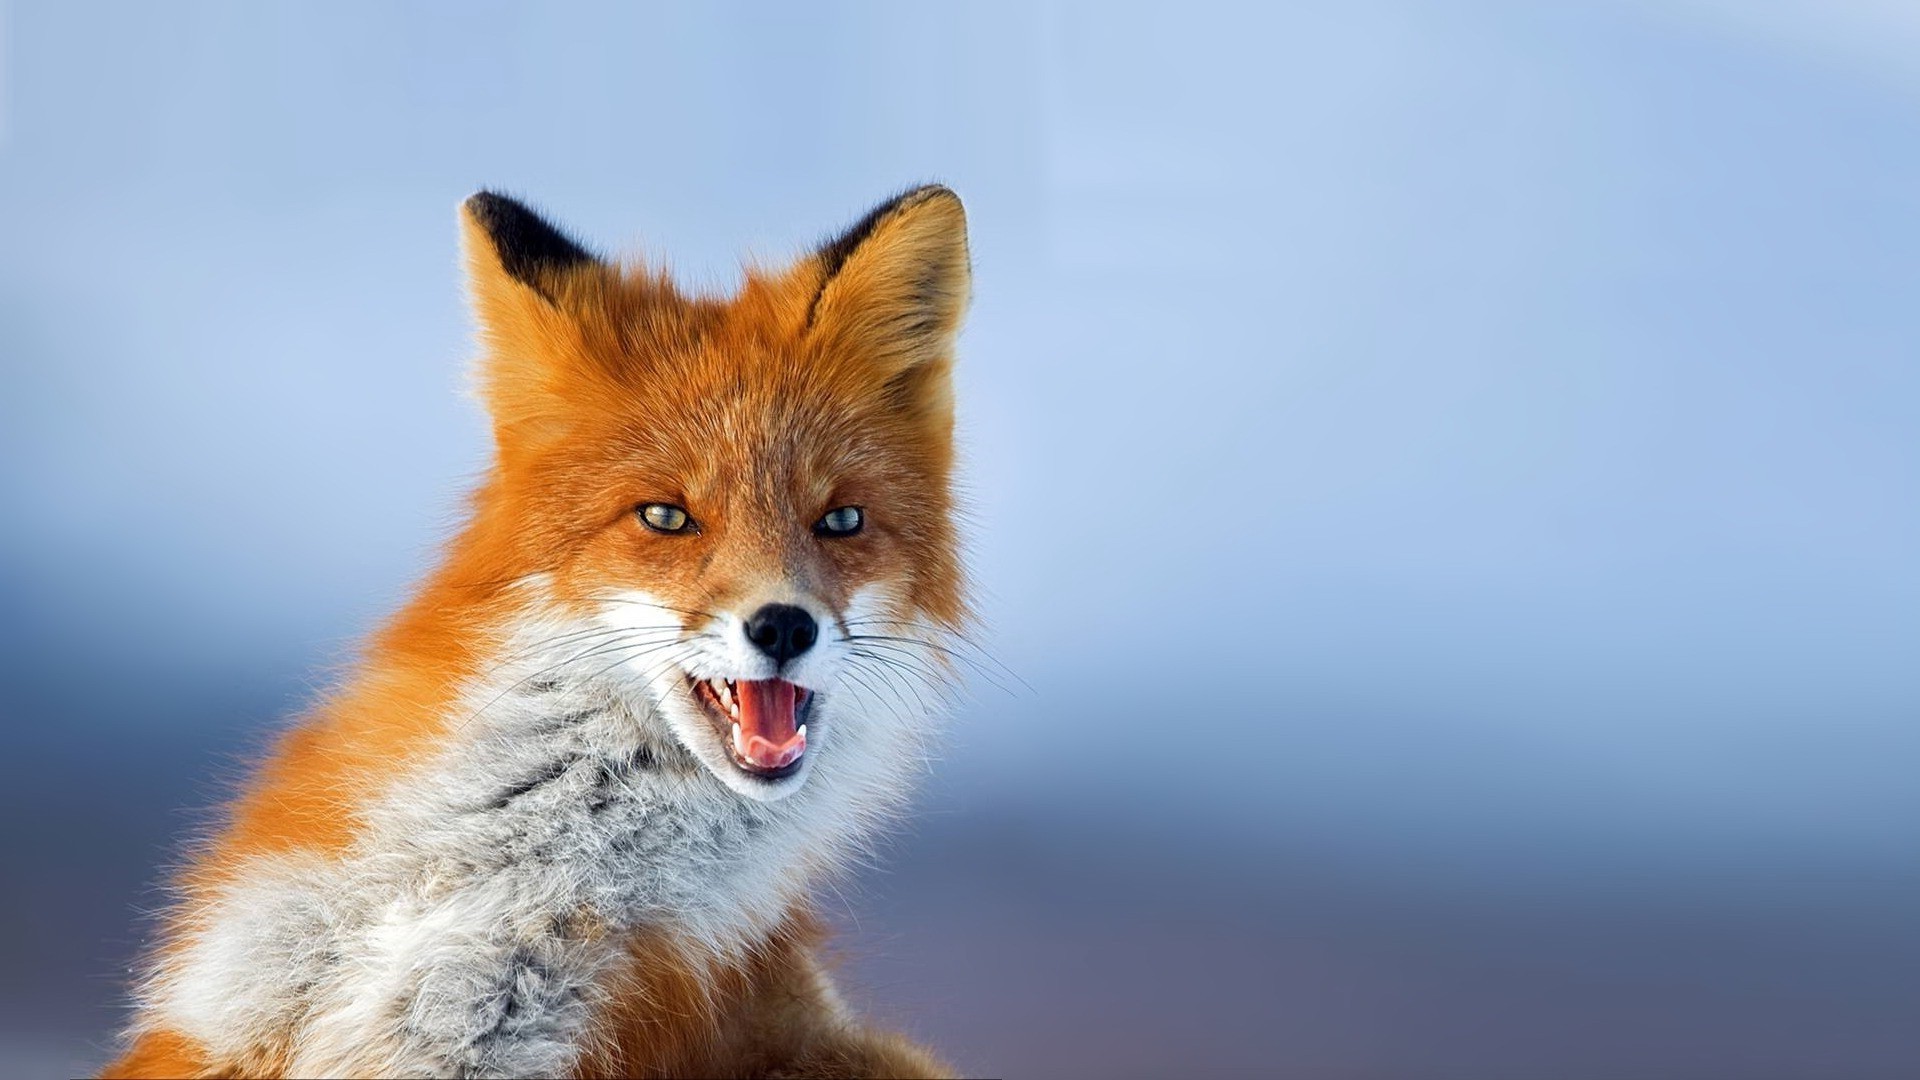 Wallpapers animals wildlife fur on the desktop